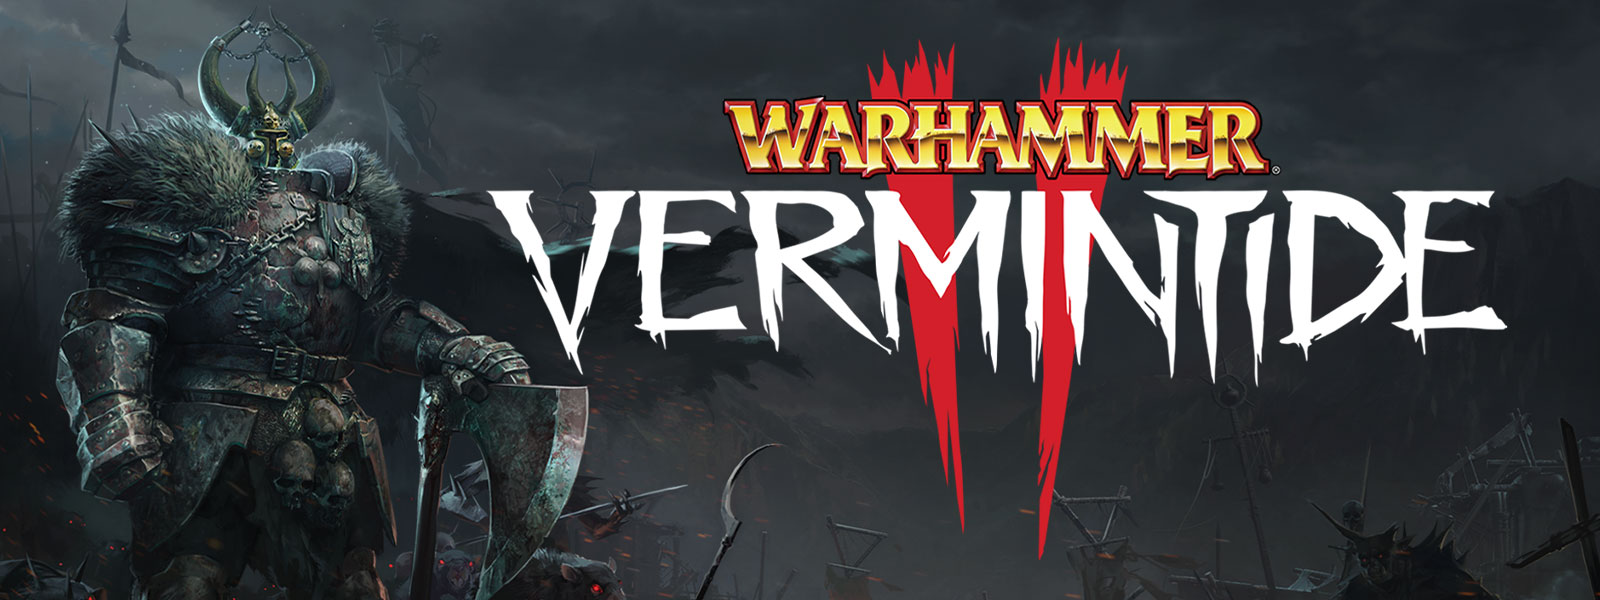 Warhammer: Vermintide 2. Eine gepanzerte Gestalt mit Pelzpanzern steht an der Spitze einer Armee von Ratten mit glühenden Augen.